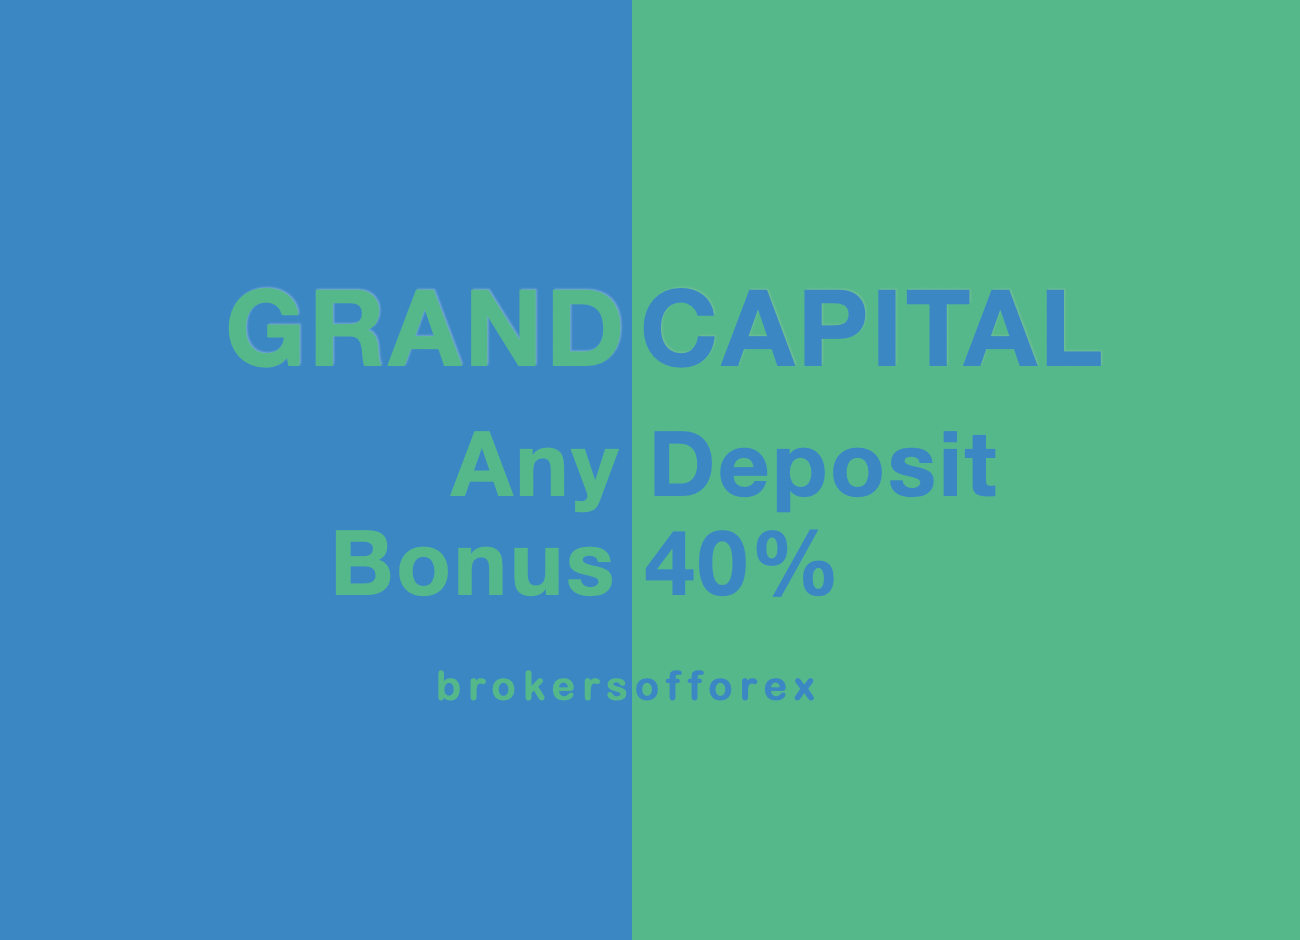 GrandCapital 40% Bonus